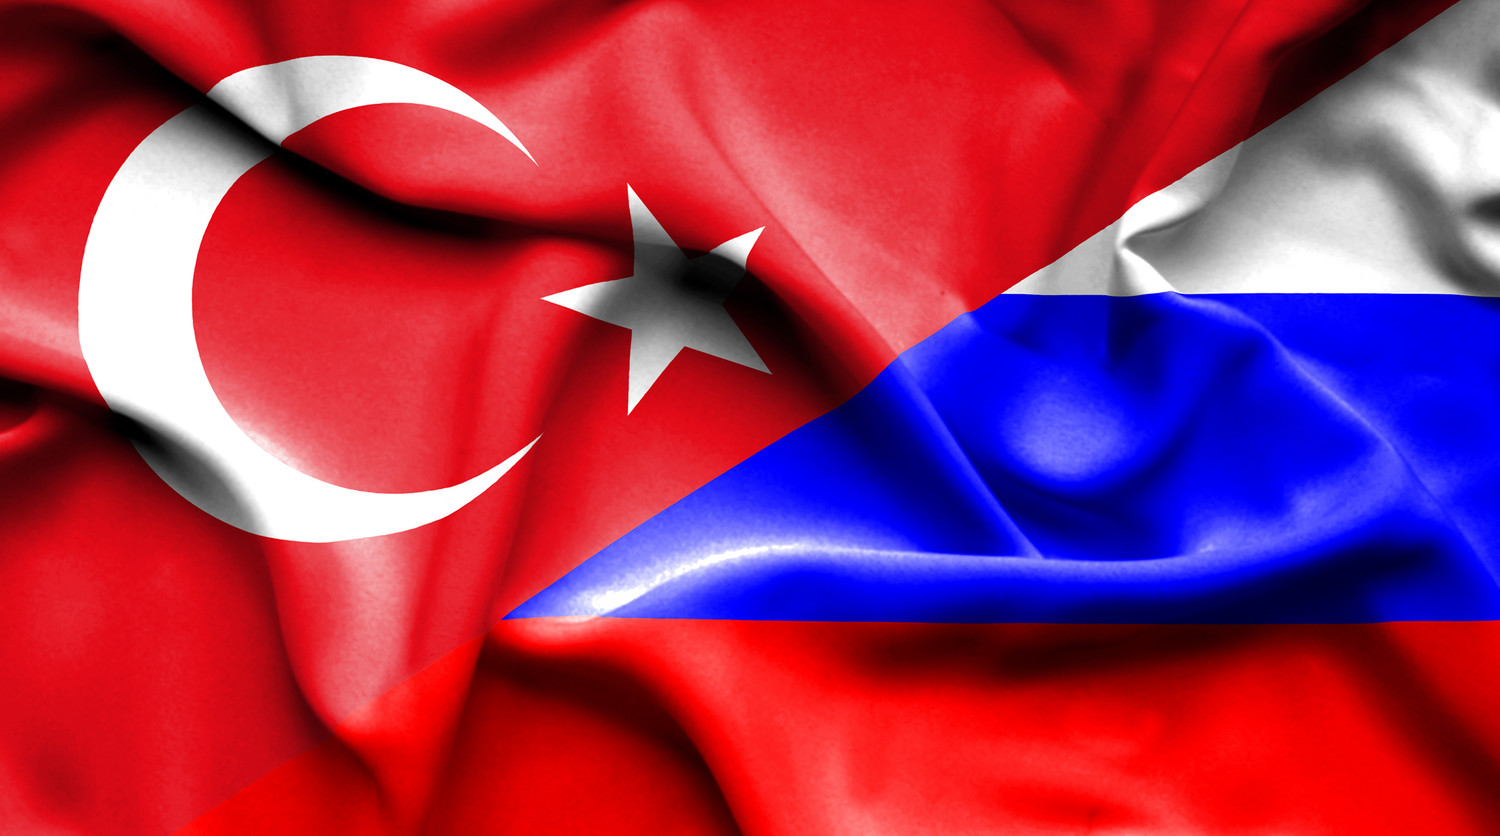 Рамис Юнус об отношениях России и Турции: "Брак по расчету"